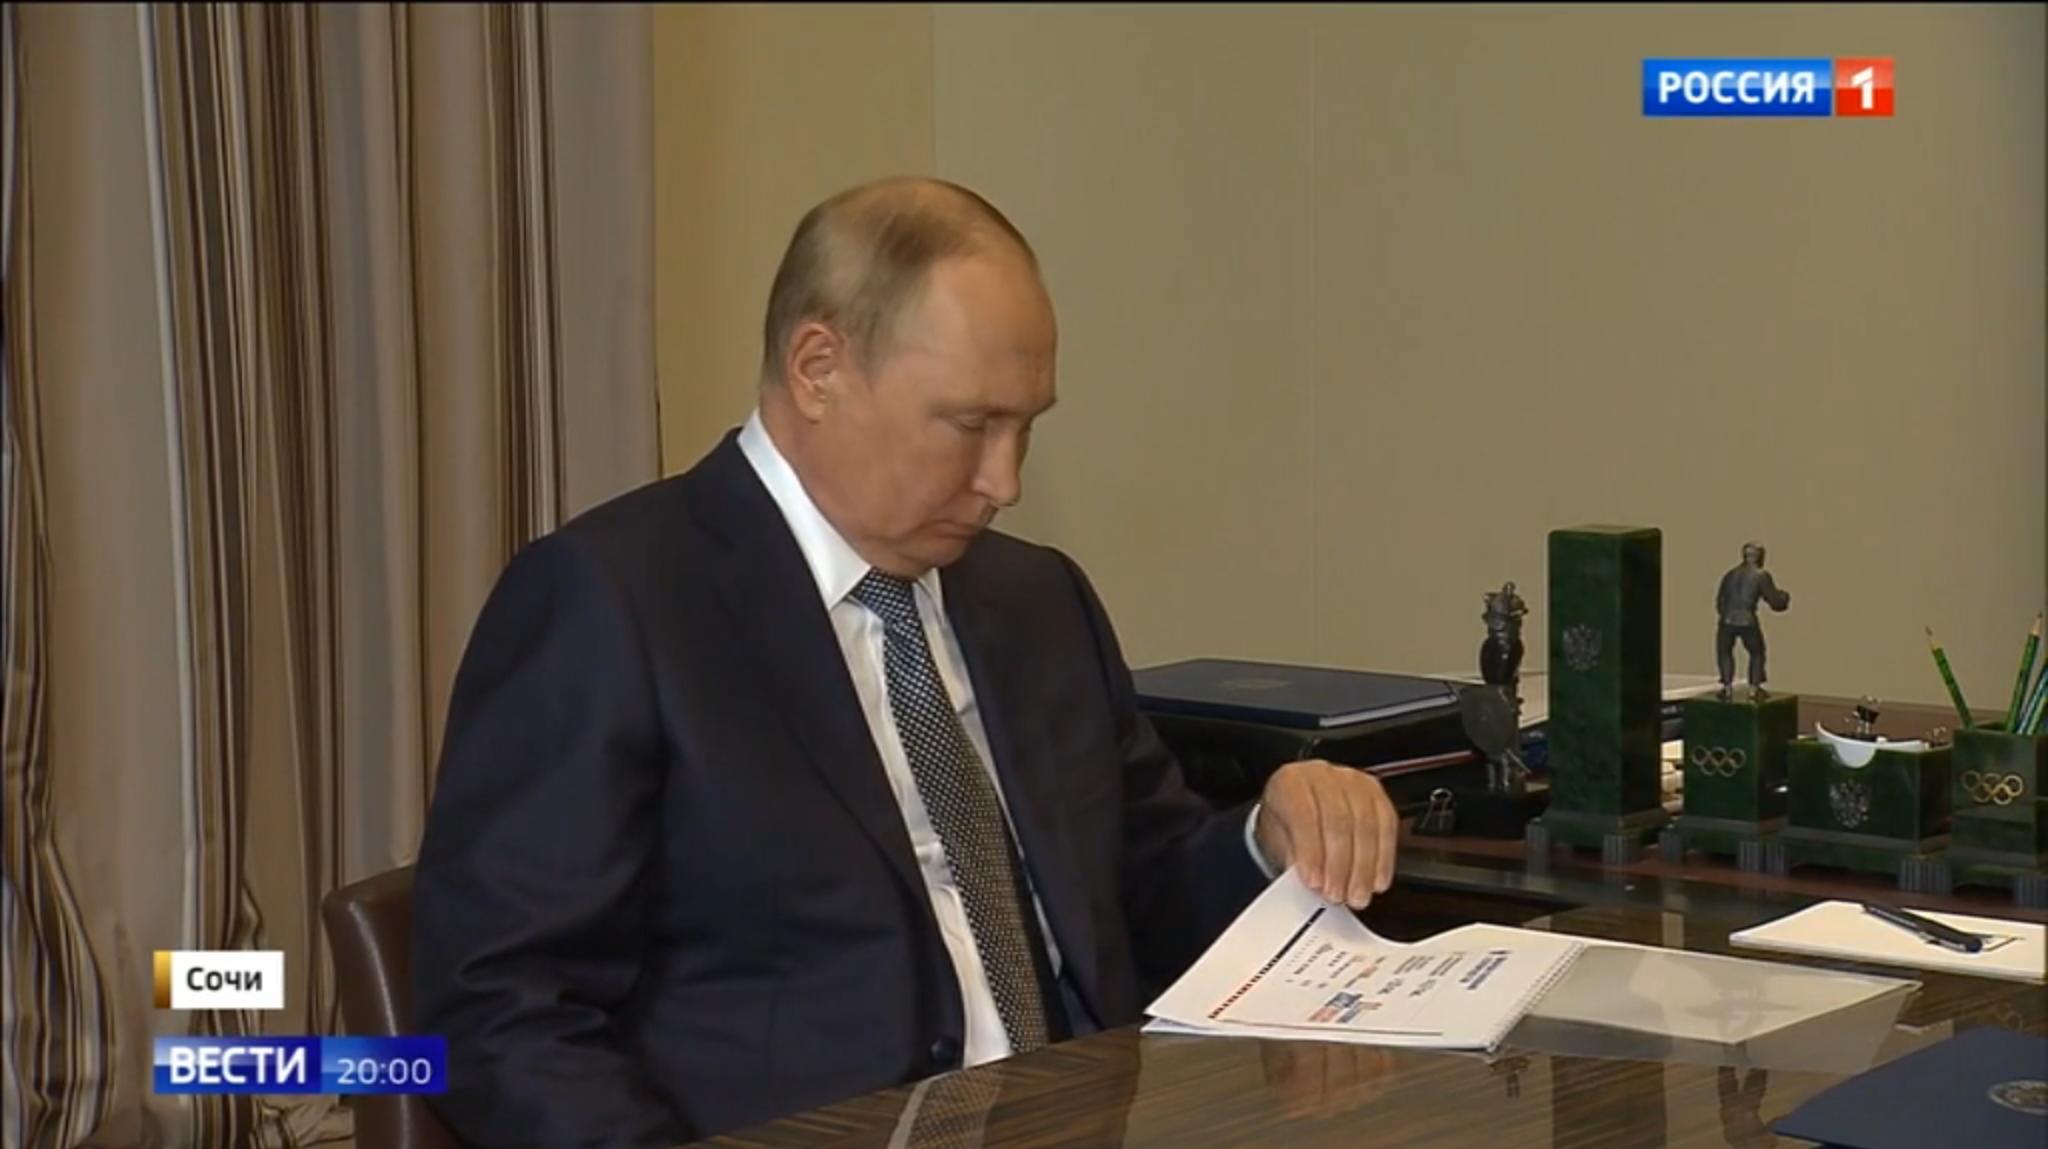 Putin przegląda wydrukowaną prezentację